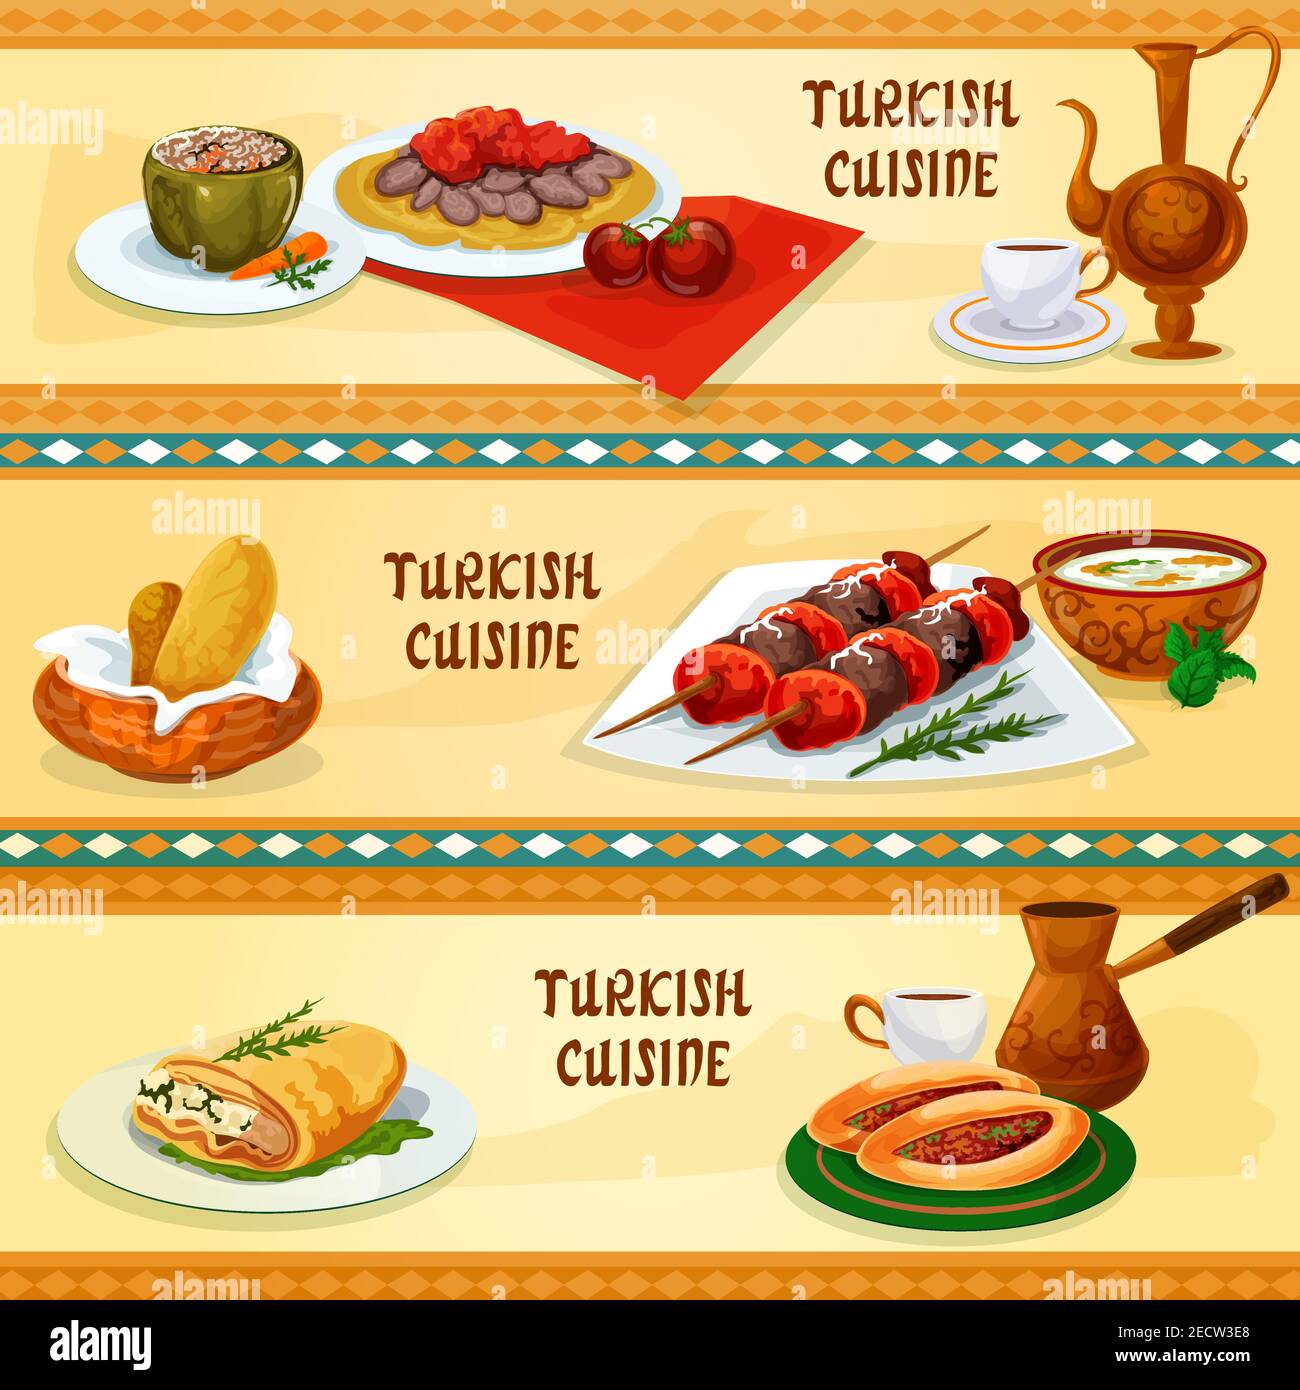 Restaurante de cocina turca pancartas con brochetas de carne shish kebab, pan plano con kebab iskander y salsa, café, pimienta rellena, pastel de carne, Ilustración del Vector